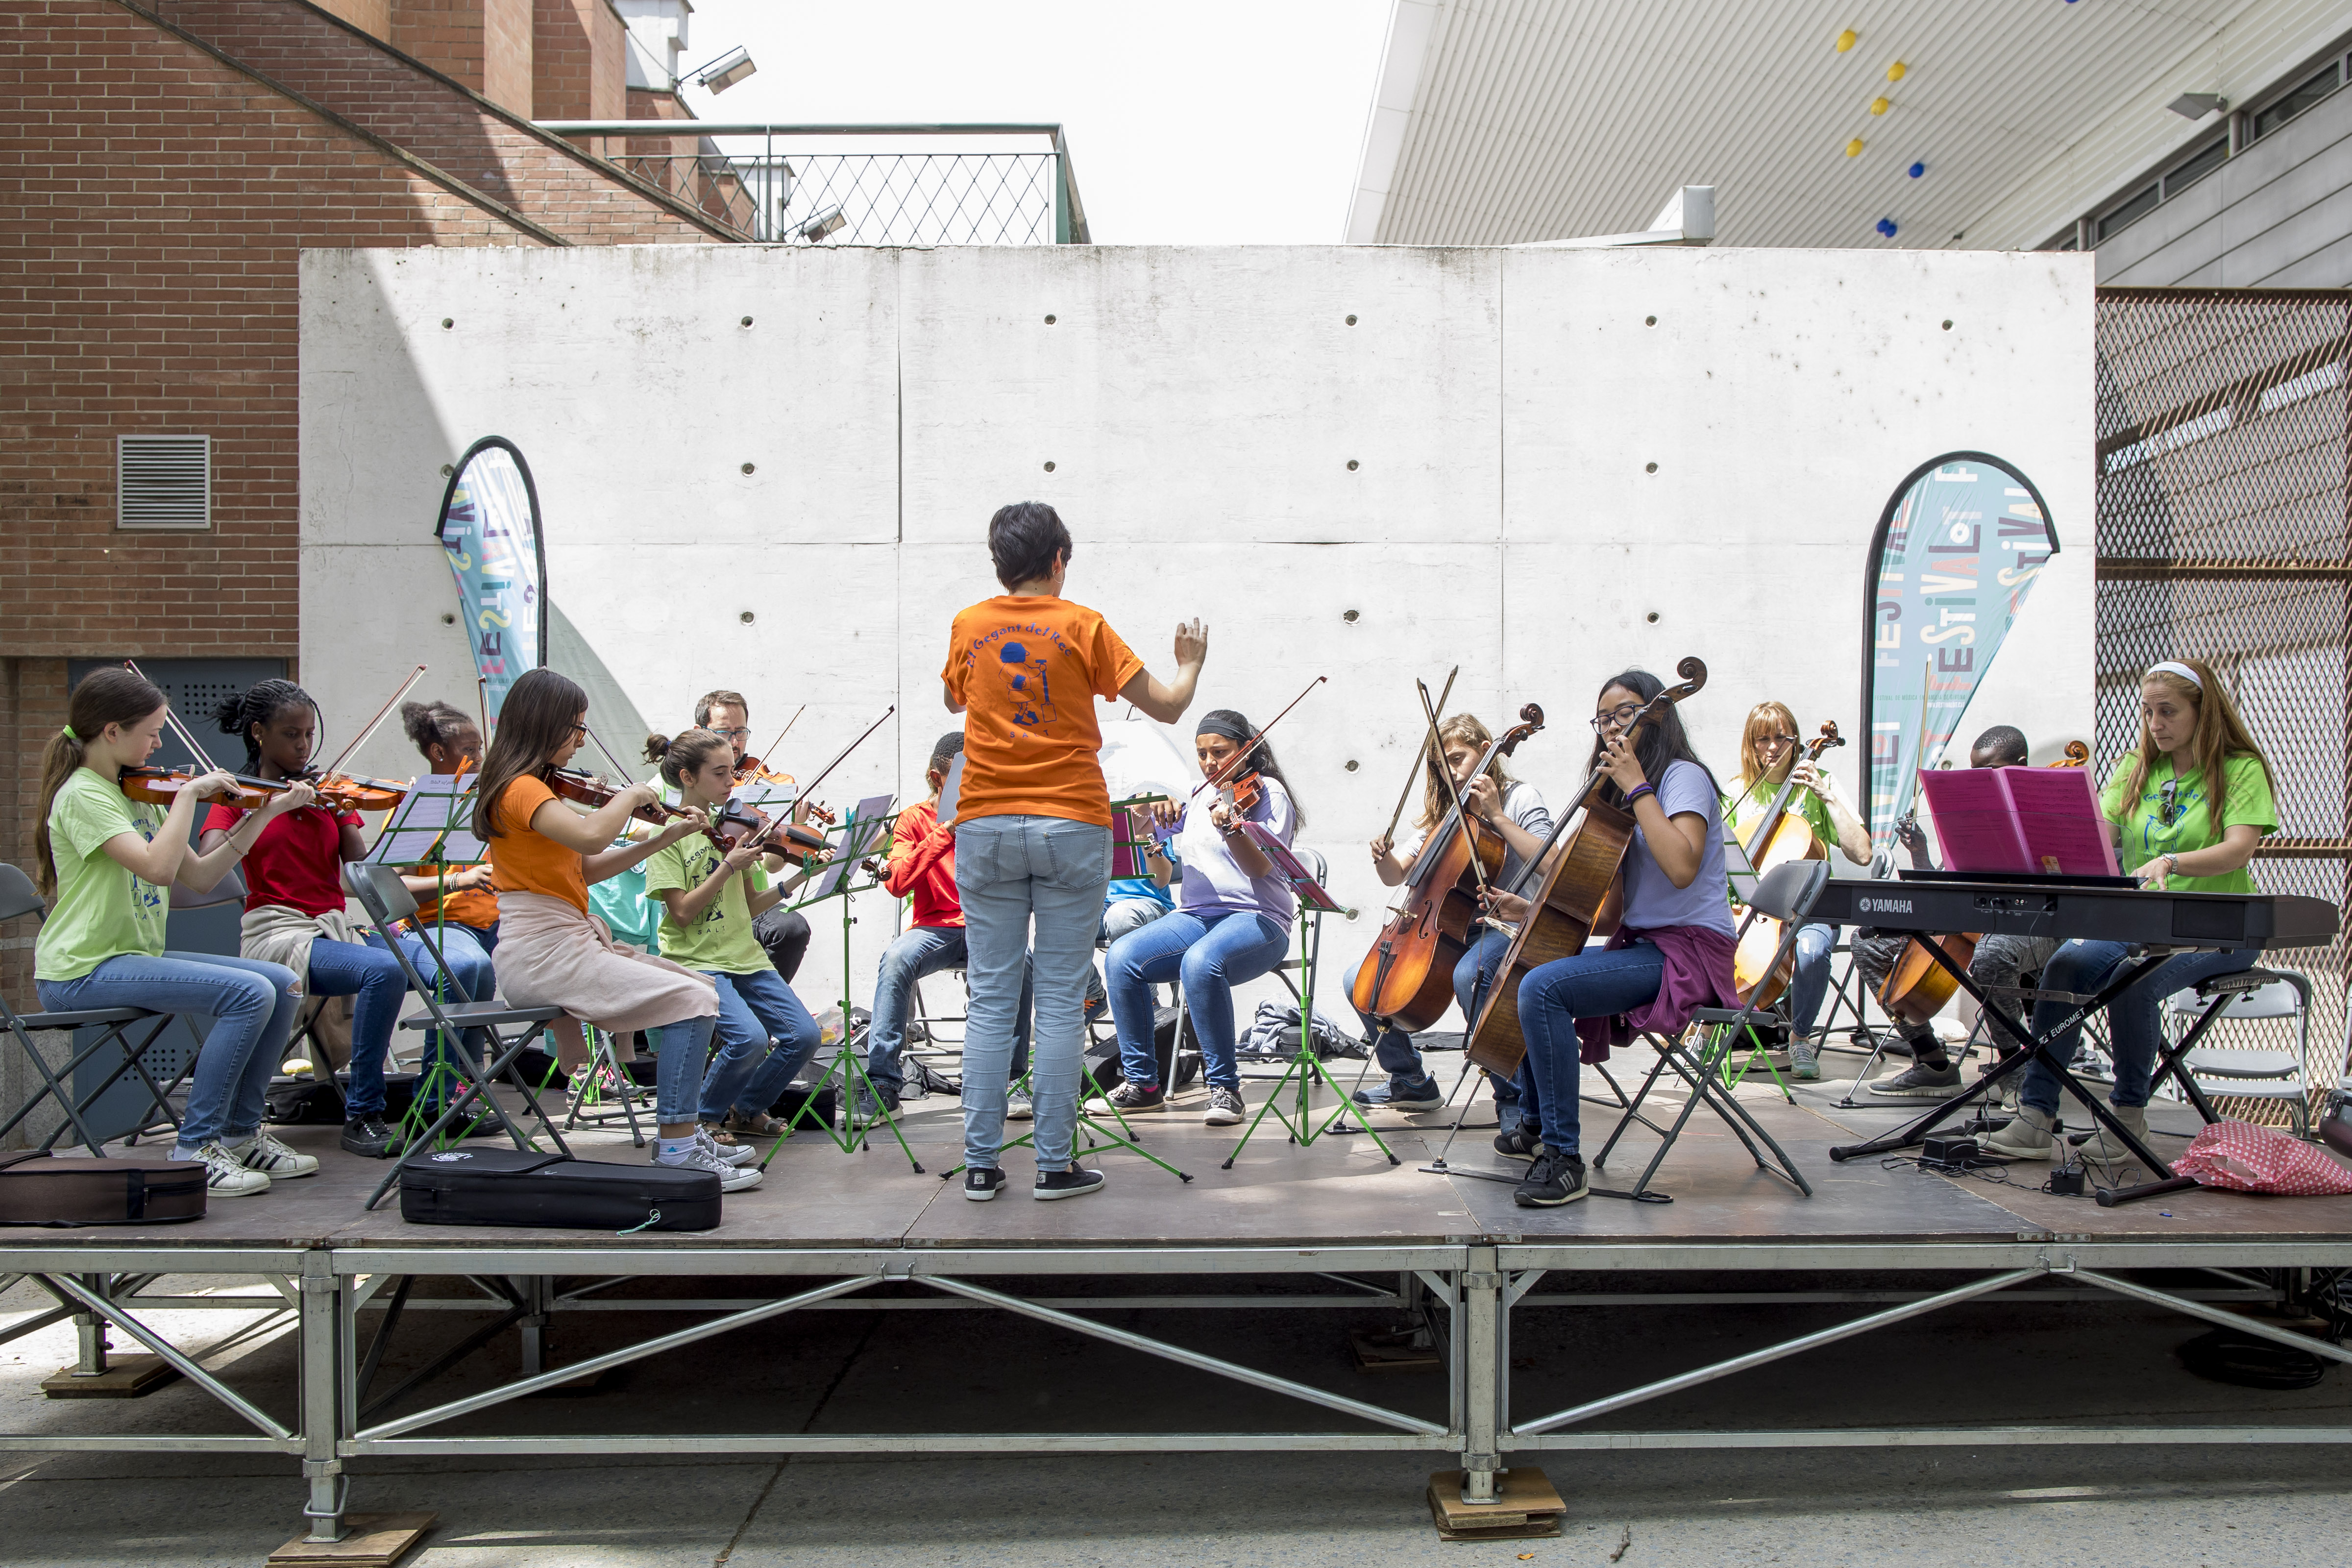 A propòsit de la competència cultural i artística: transformacions comunitàries des de l’educació musical